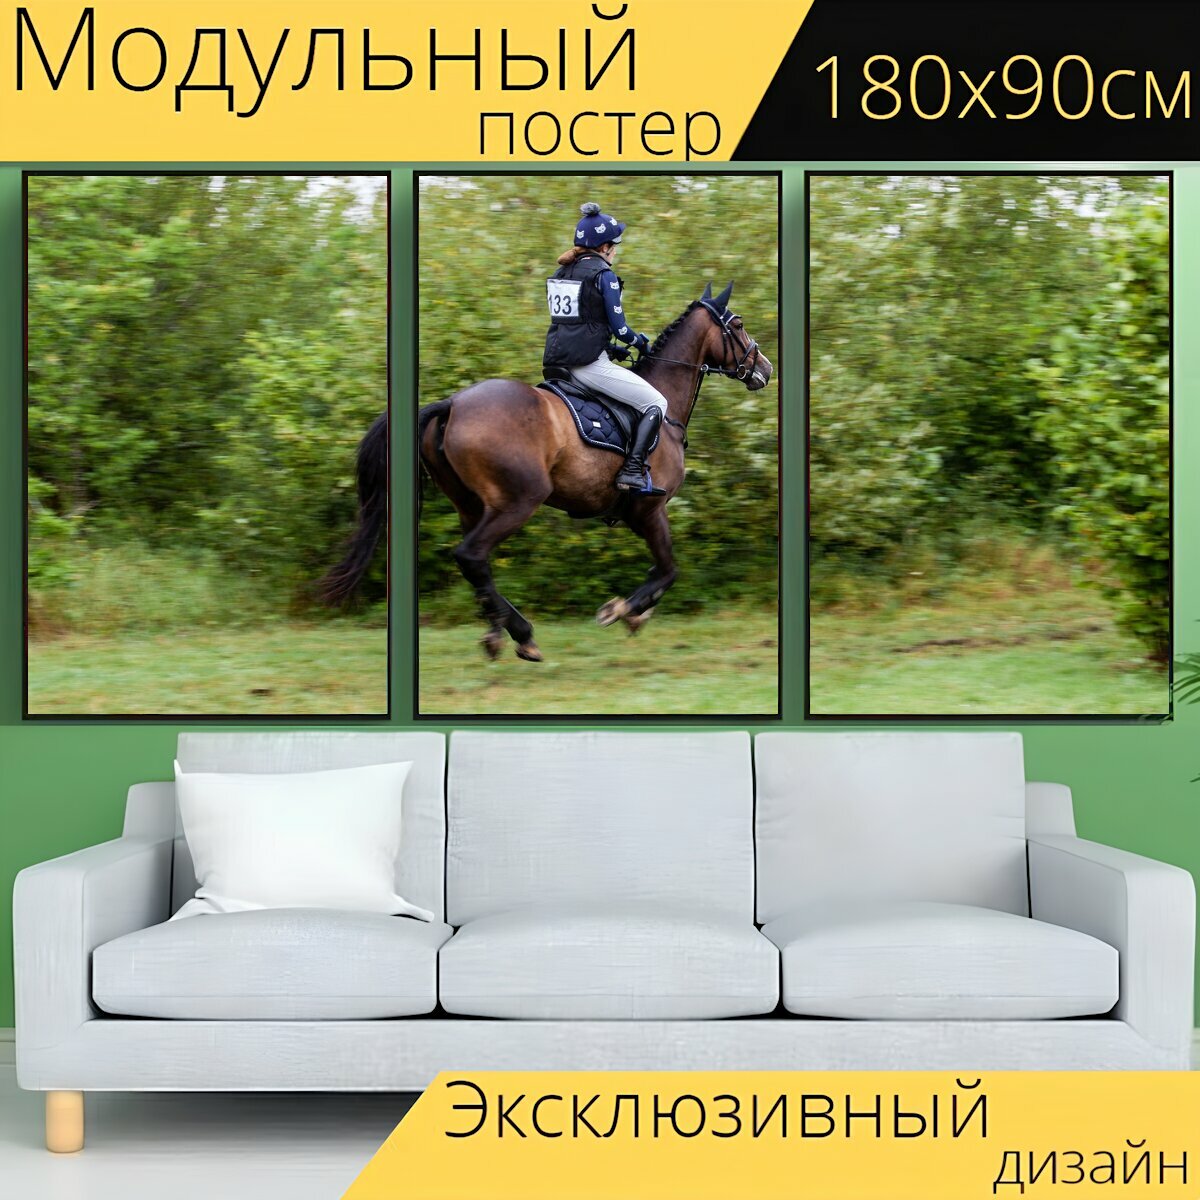 Модульный постер "Лошадь, скачущий, галопом" 180 x 90 см. для интерьера